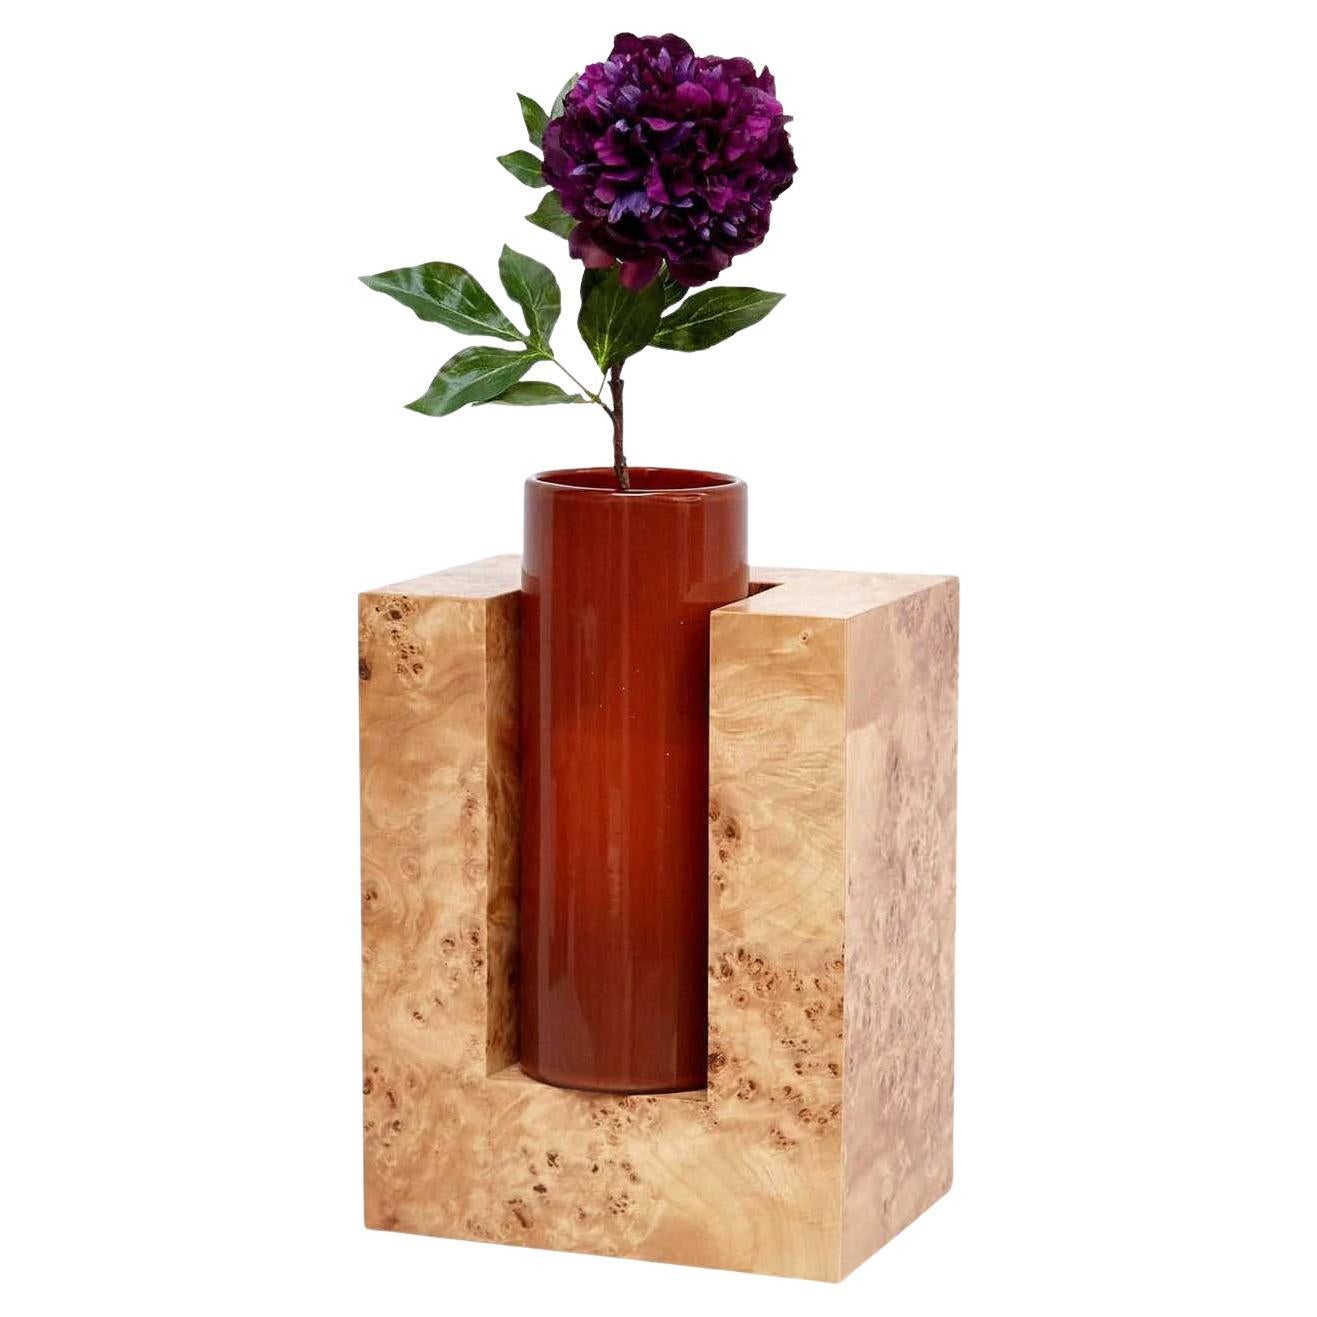 Ettore Sottsass Y Jarrón de edición limitada de madera y cristal de Murano para flores